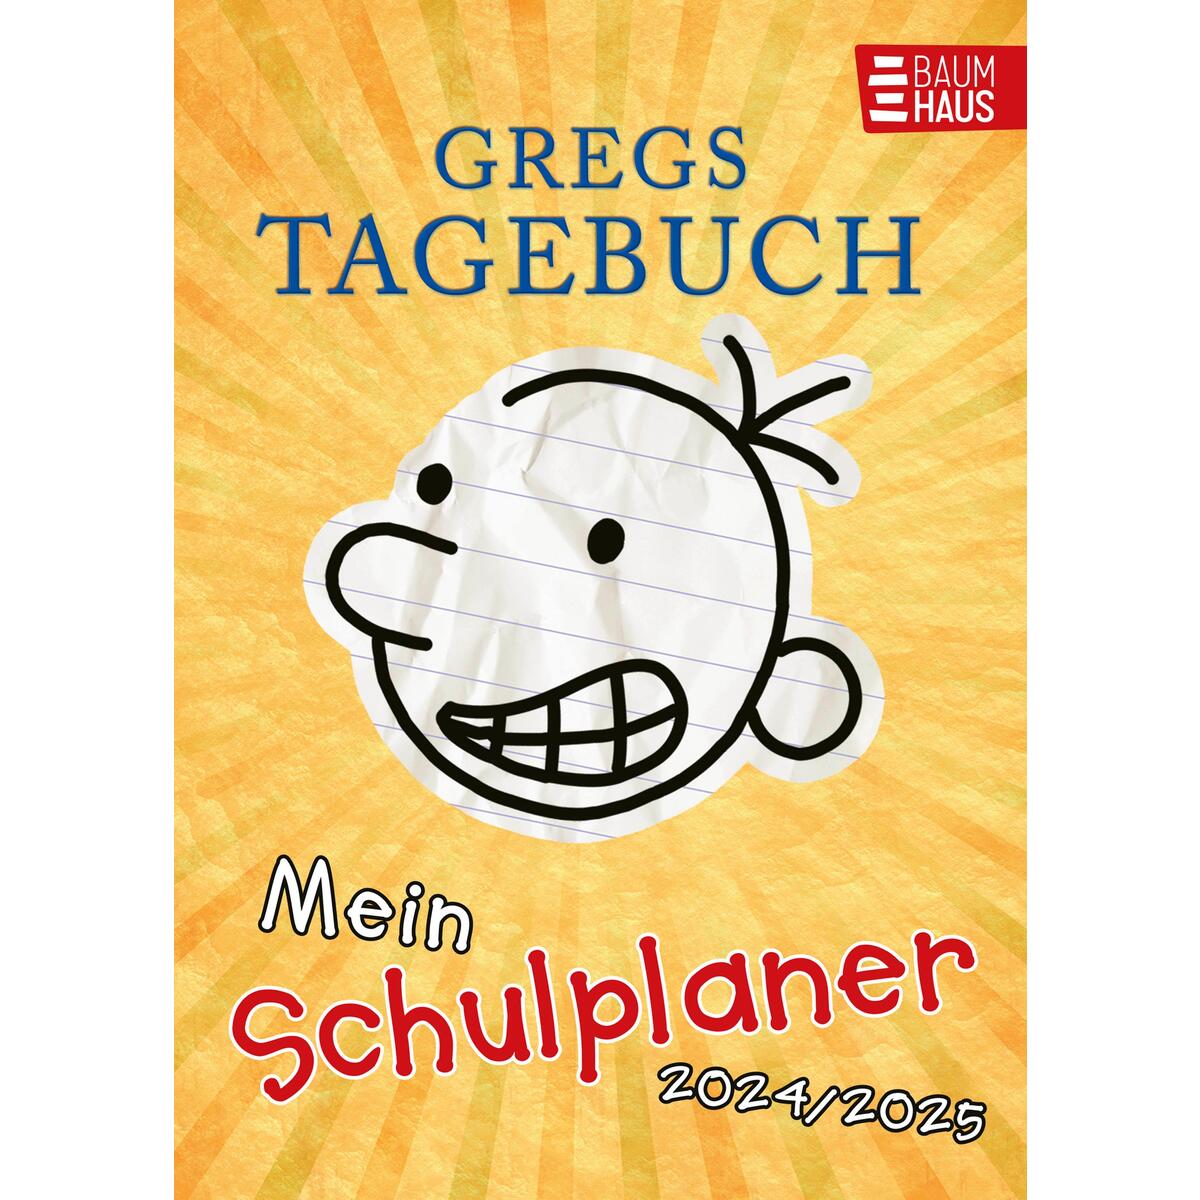 Gregs Tagebuch - Mein Schulplaner 2024/2025 von Baumhaus Verlag GmbH